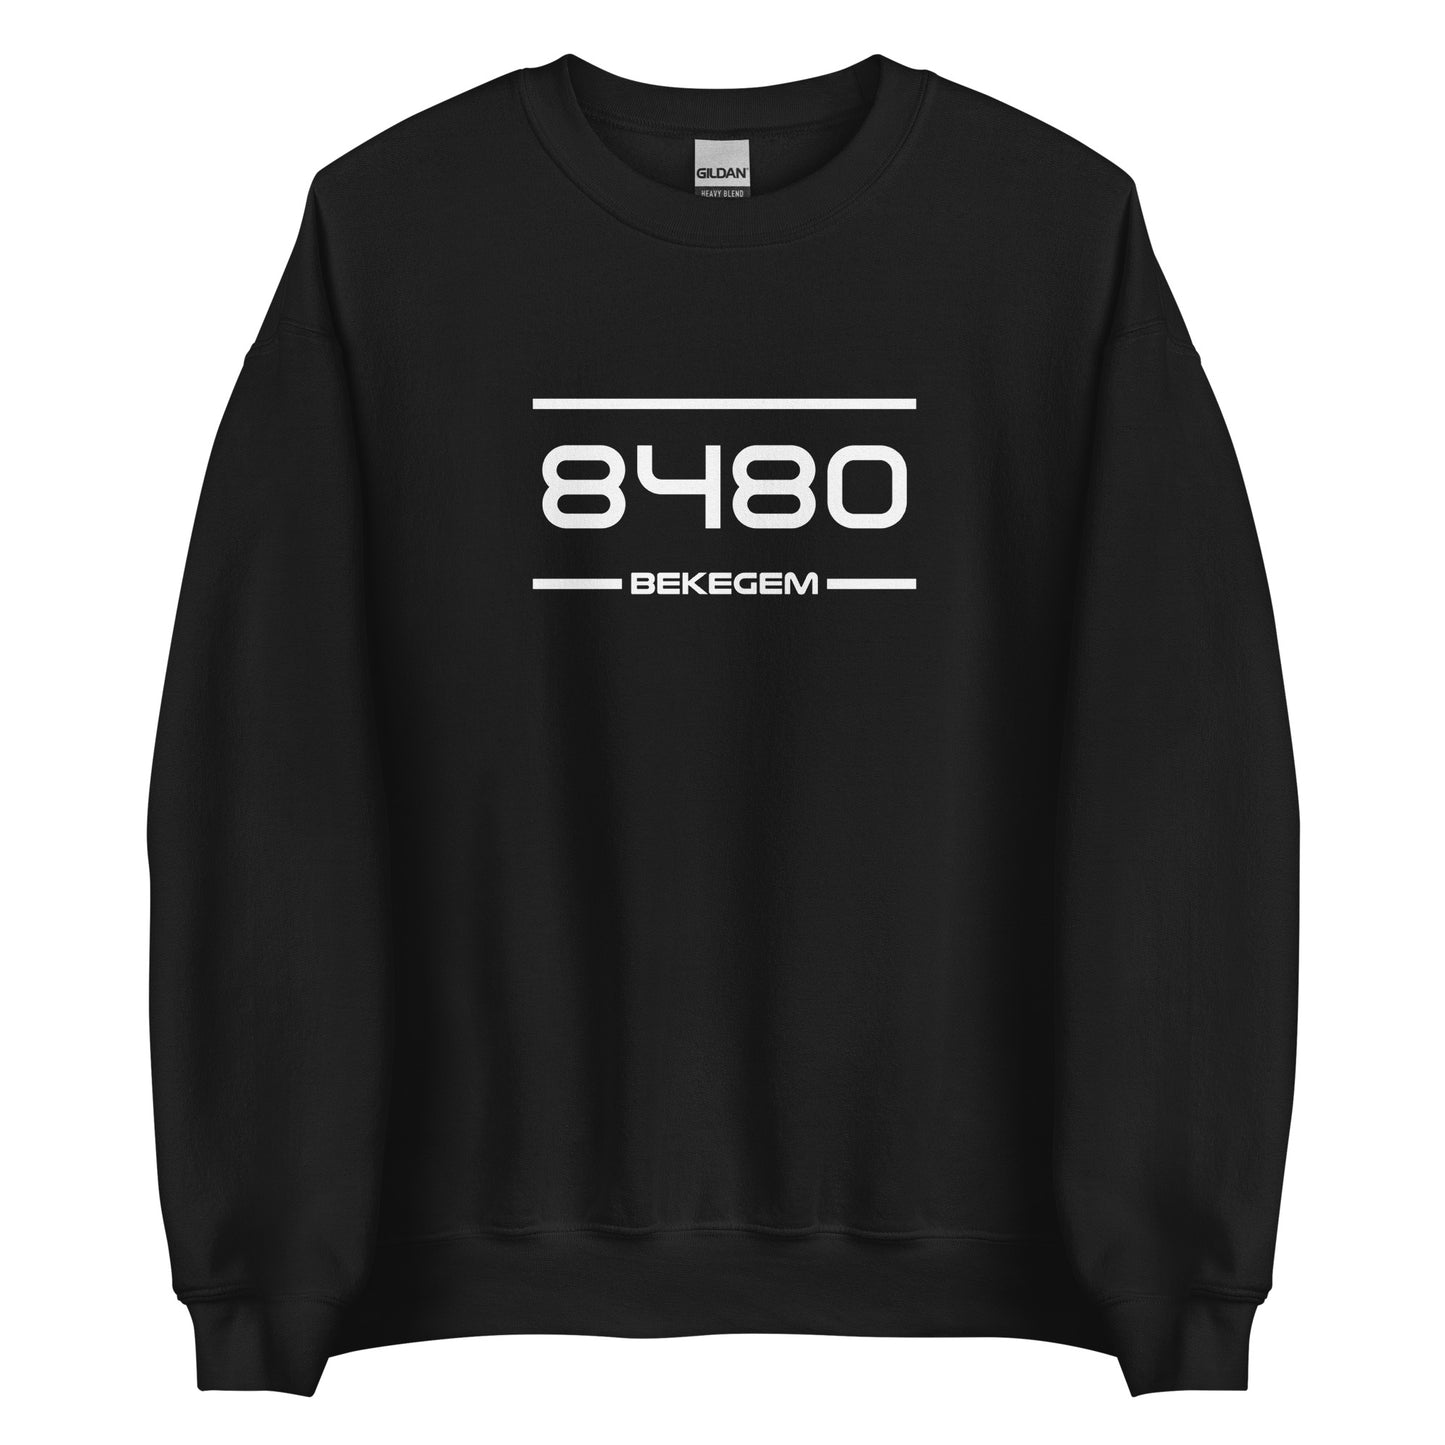 Sweater - 8480 - Bekegem (M/V)